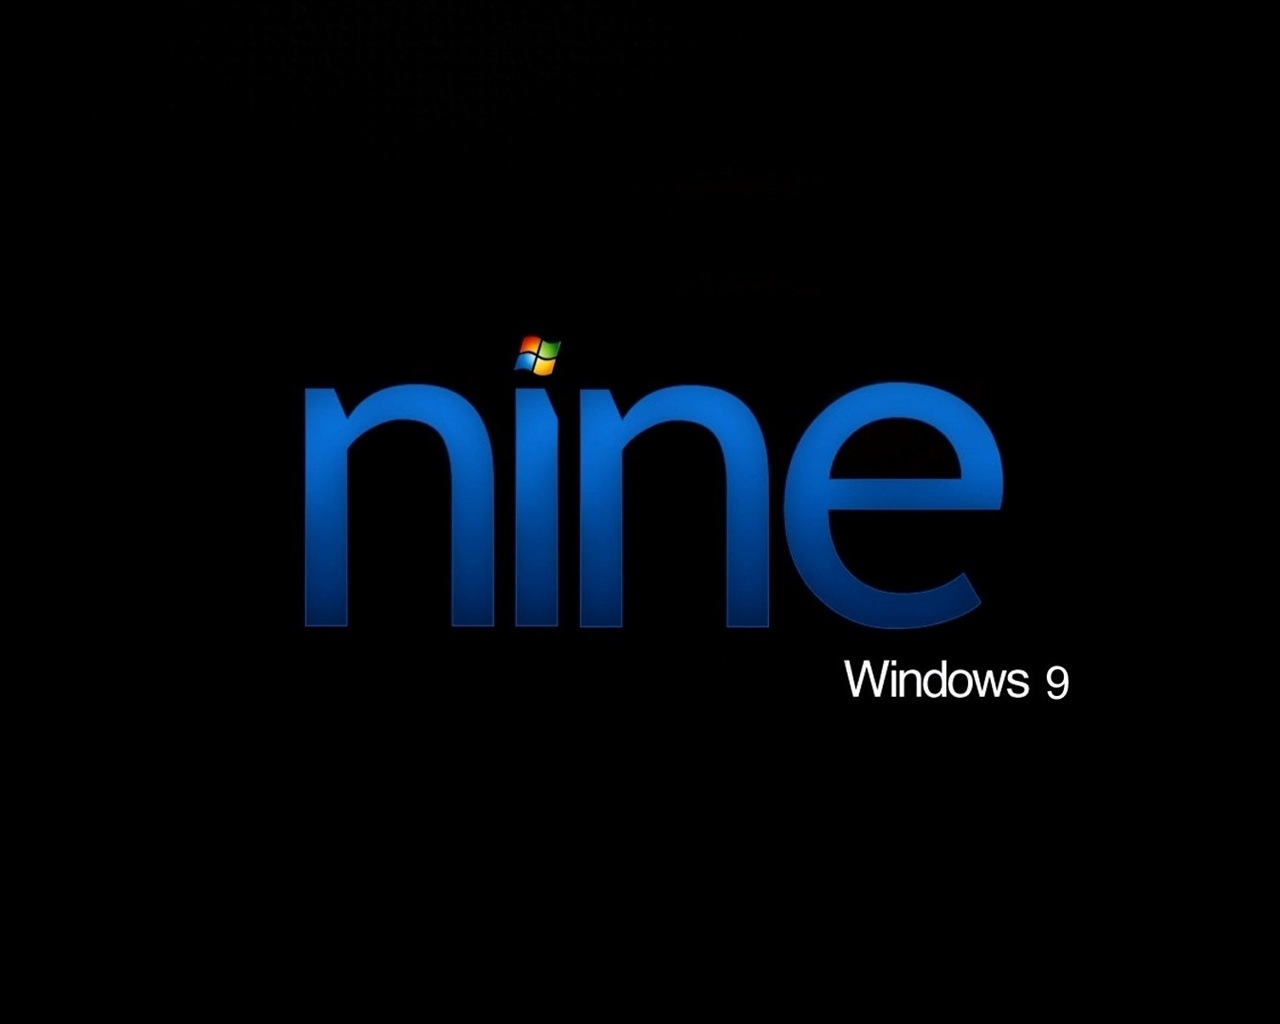 微软 Windows 9 系统主题 高清壁纸18 - 1280x1024